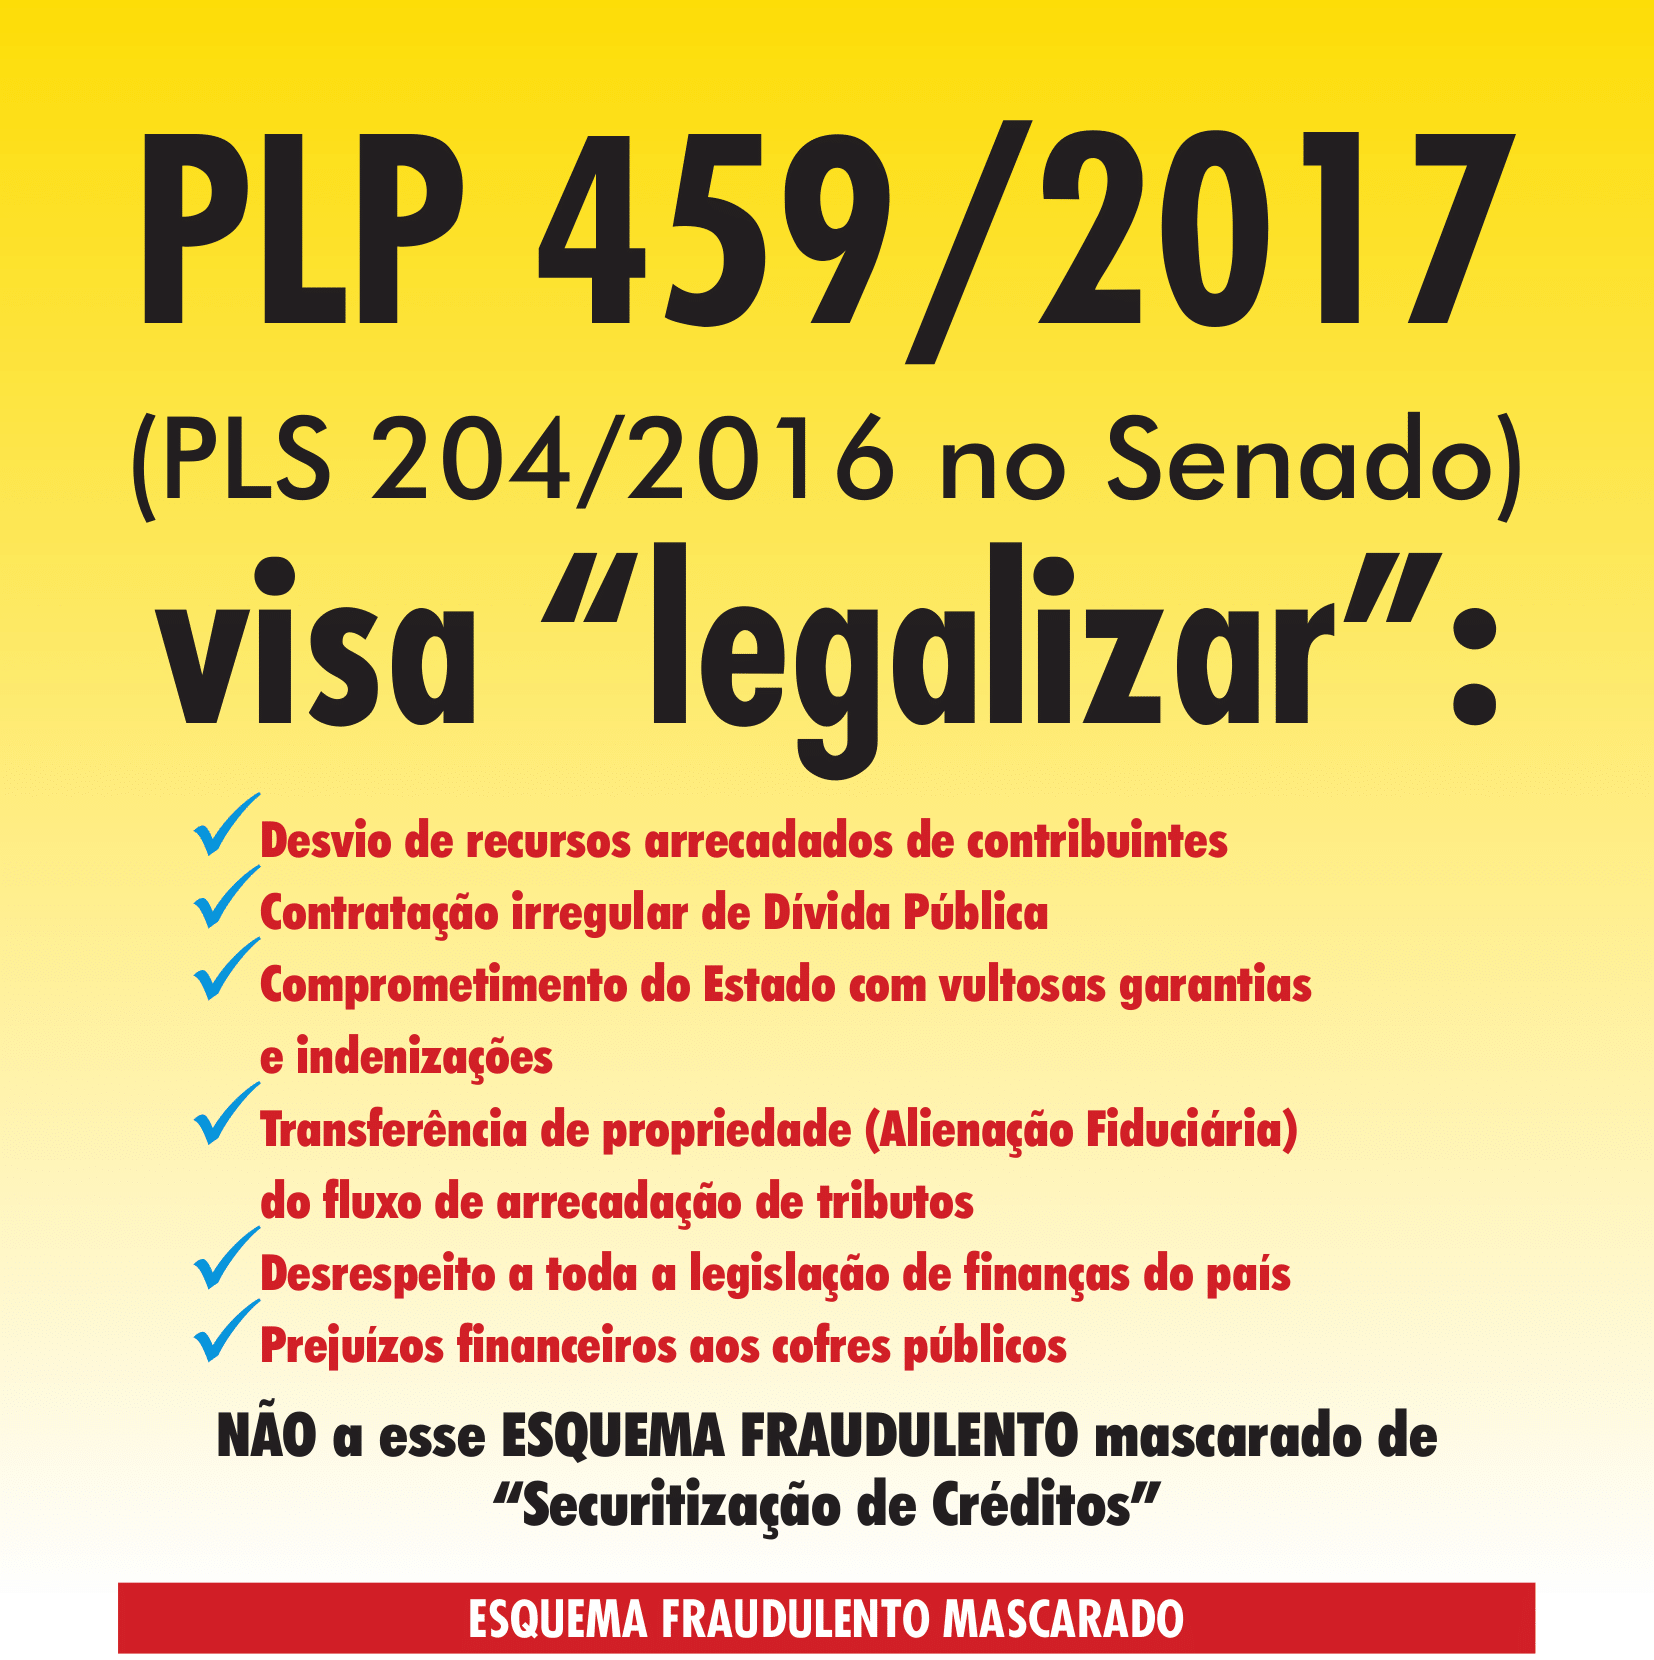 Folheto explica PLP 459/2017, que trata da securitização de créditos